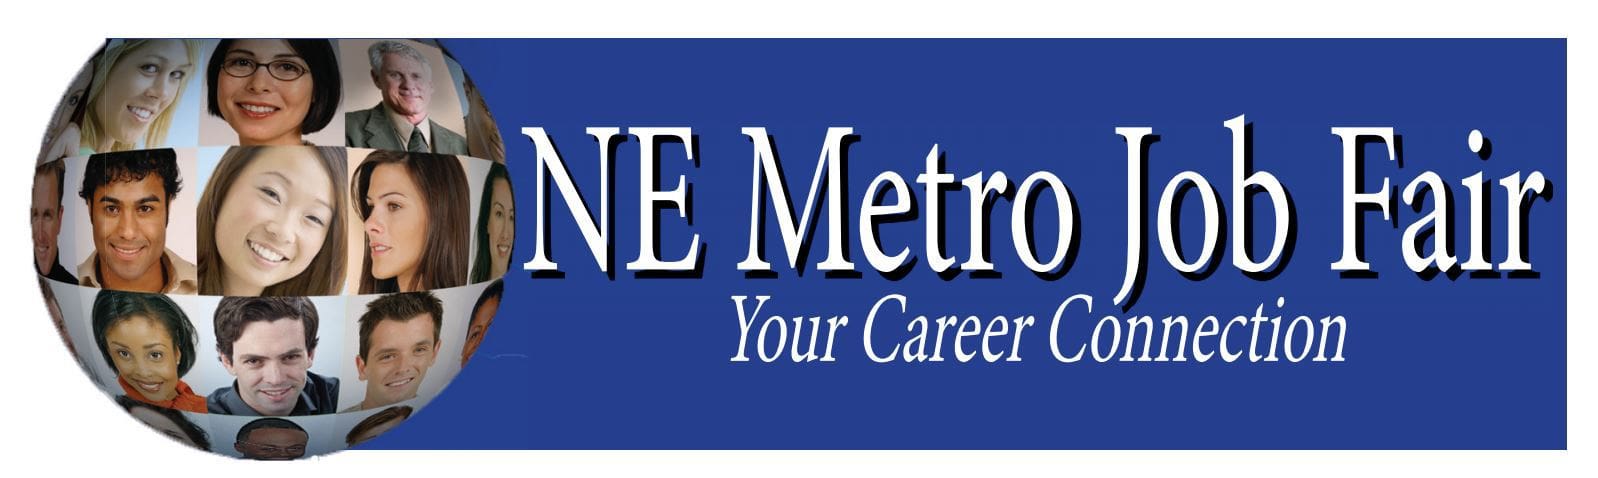 NE Metro Job Fair Sponsor